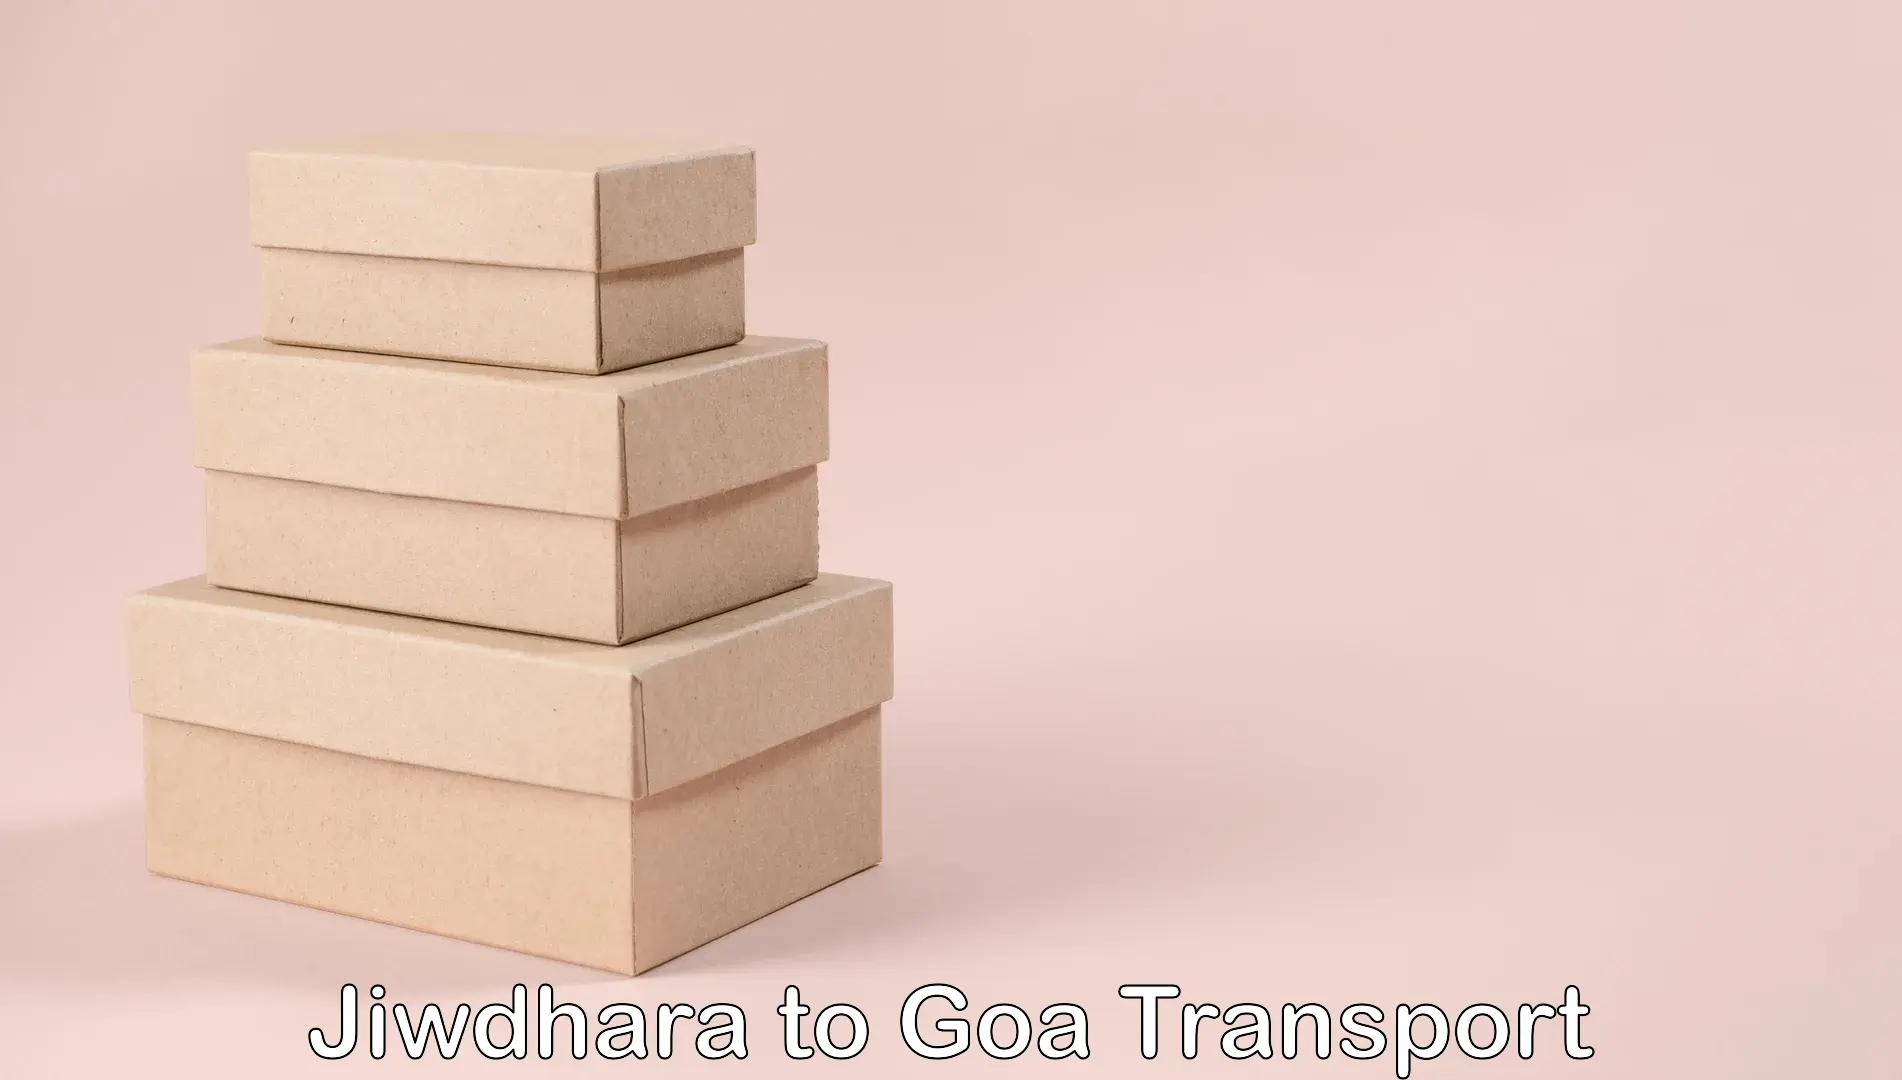 Land transport services Jiwdhara to IIT Goa